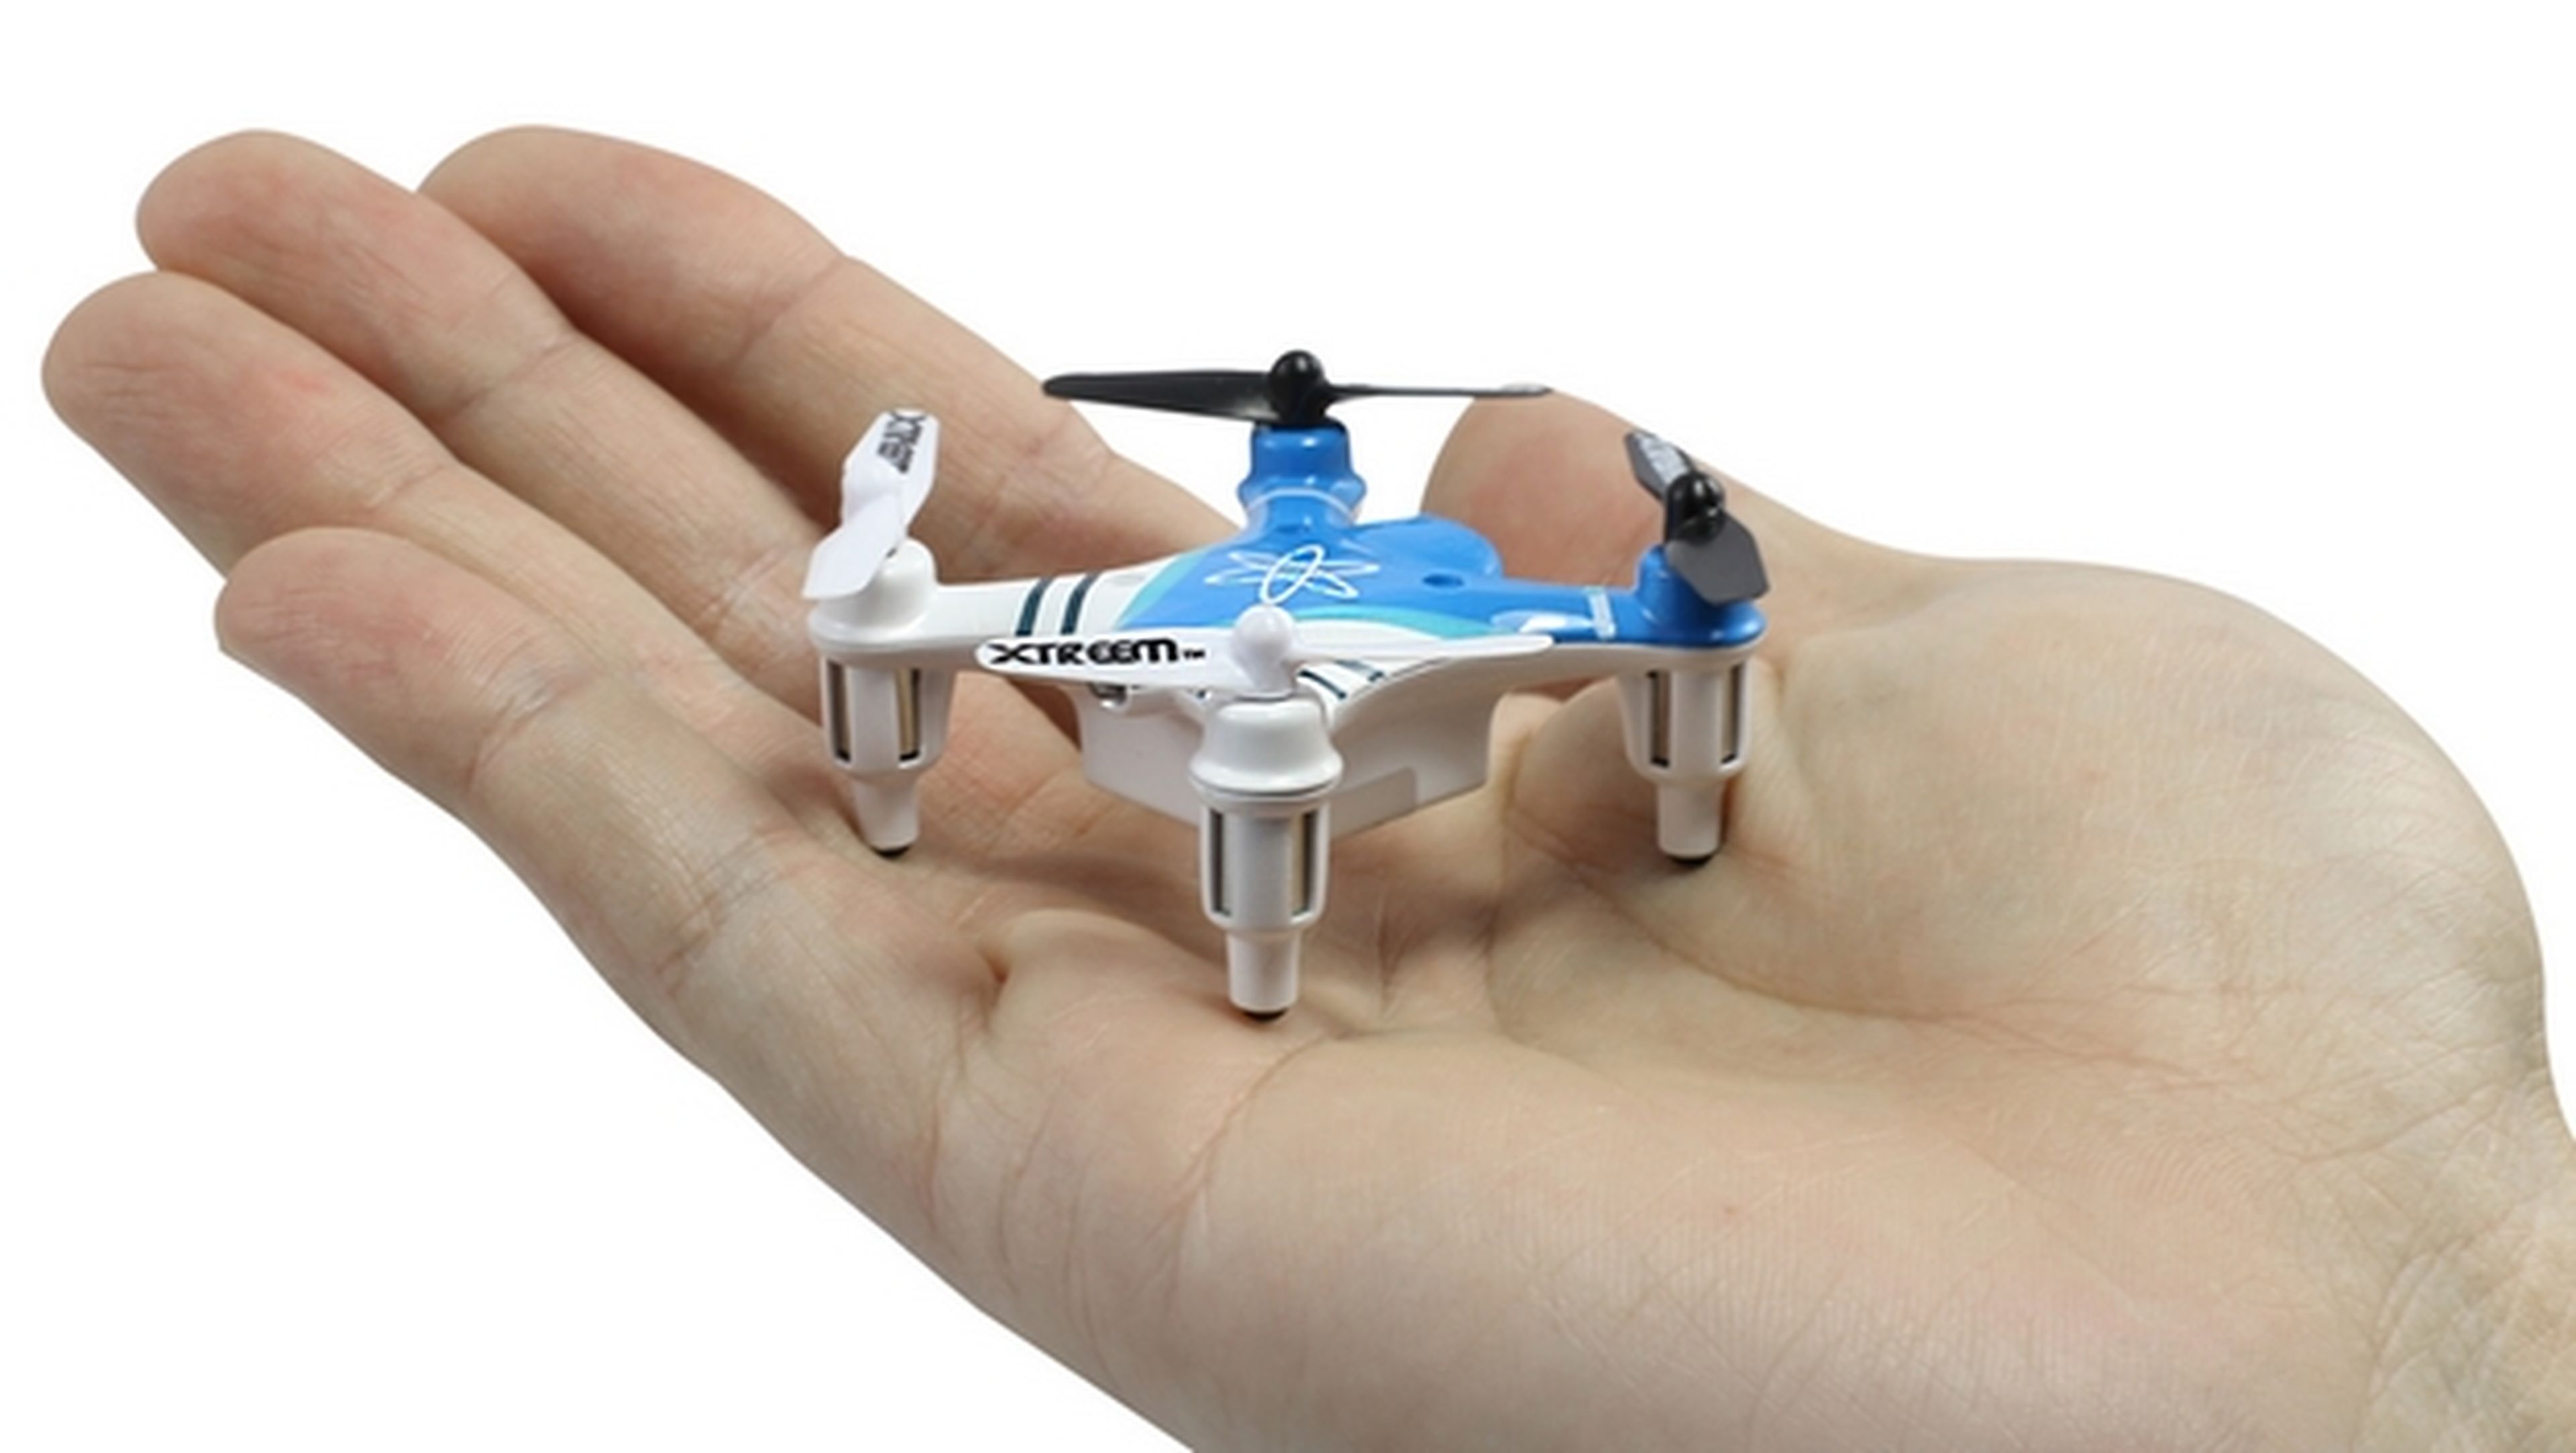 Así es el dron más pequeño del mundo... El Xtreem Atom Mini Drone... ¡Cabe en tu mano!